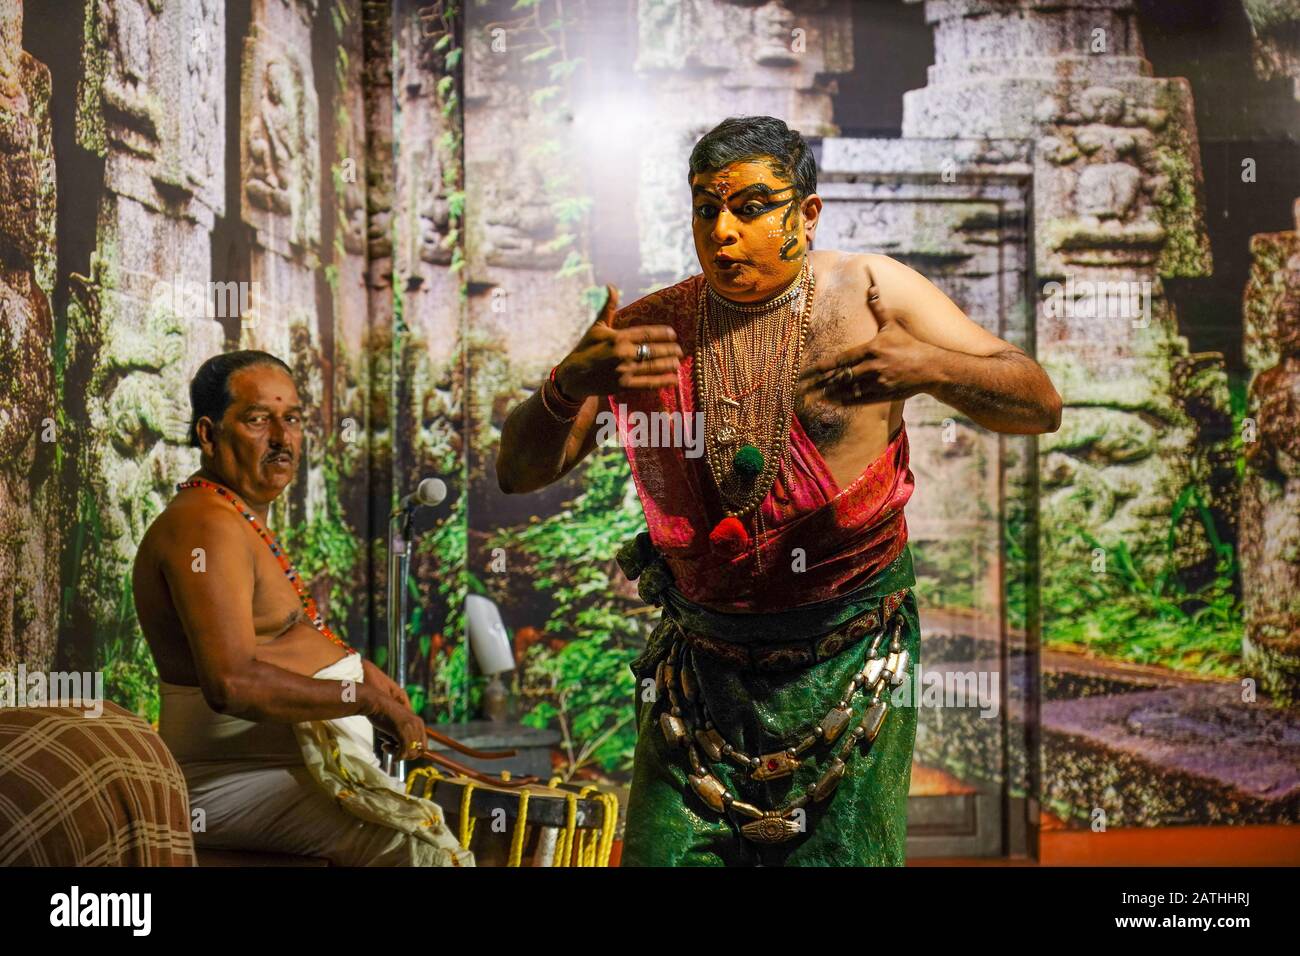 Ein Schauspieler bereitet sich auf eine Aufführung von Narakasuravadham vor. Aus einer Reihe von Reisefotos in Kerala, Südindien. Fotodatum: Freitag, 17. Januar 2020. Stockfoto